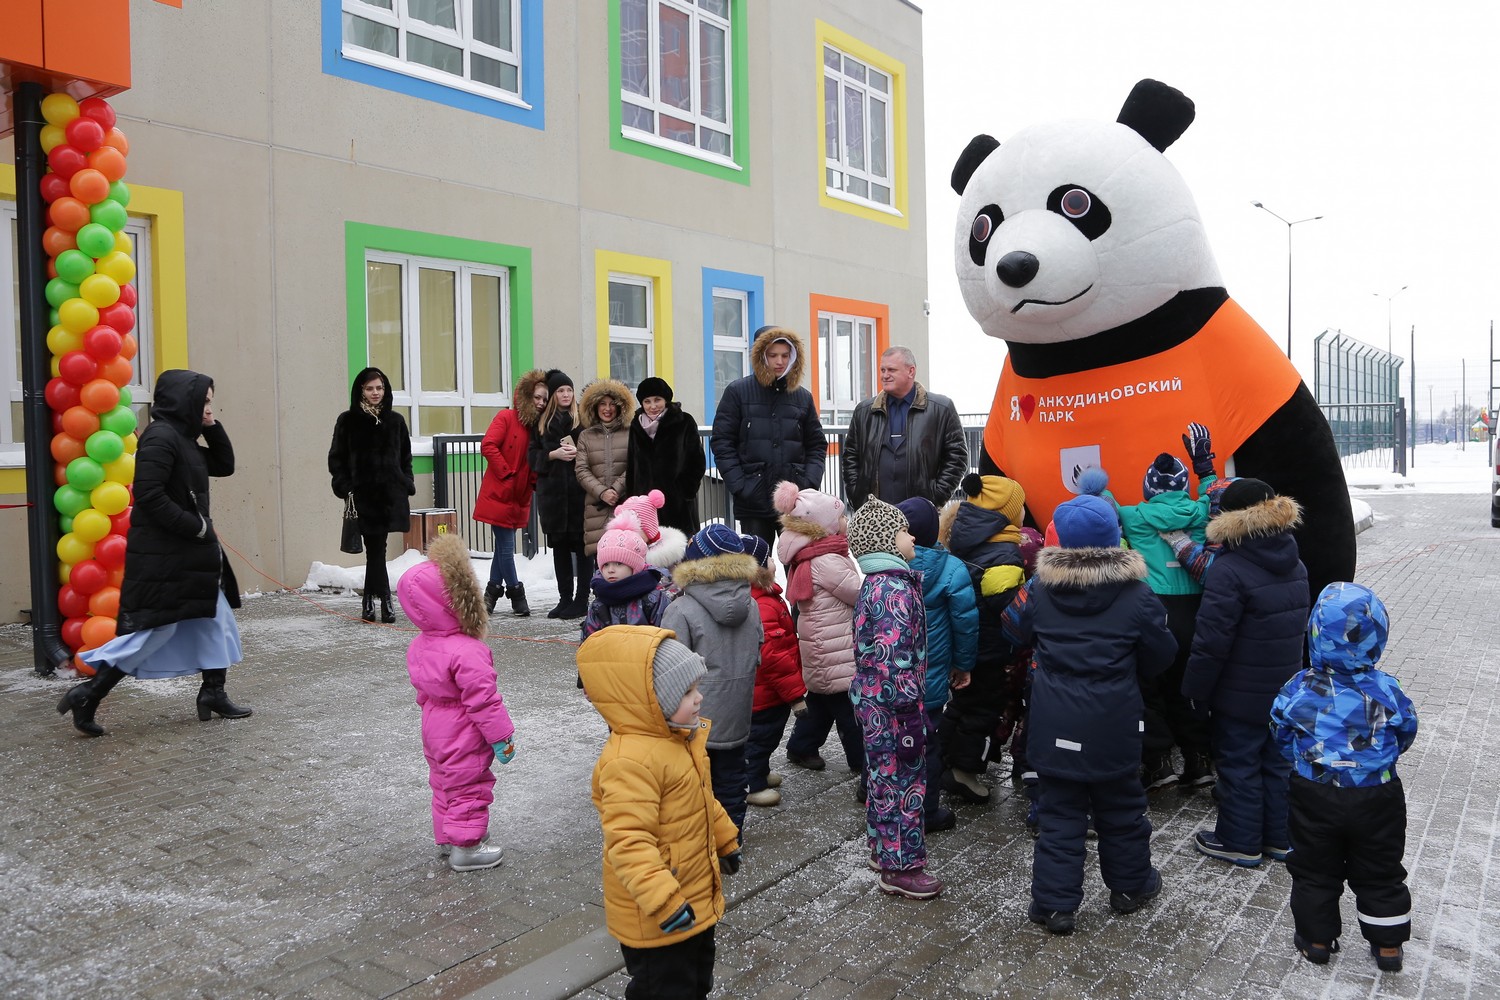 Новый детский сад «Анкудиновский парк» на 150 мест открылся в Кстовском районе